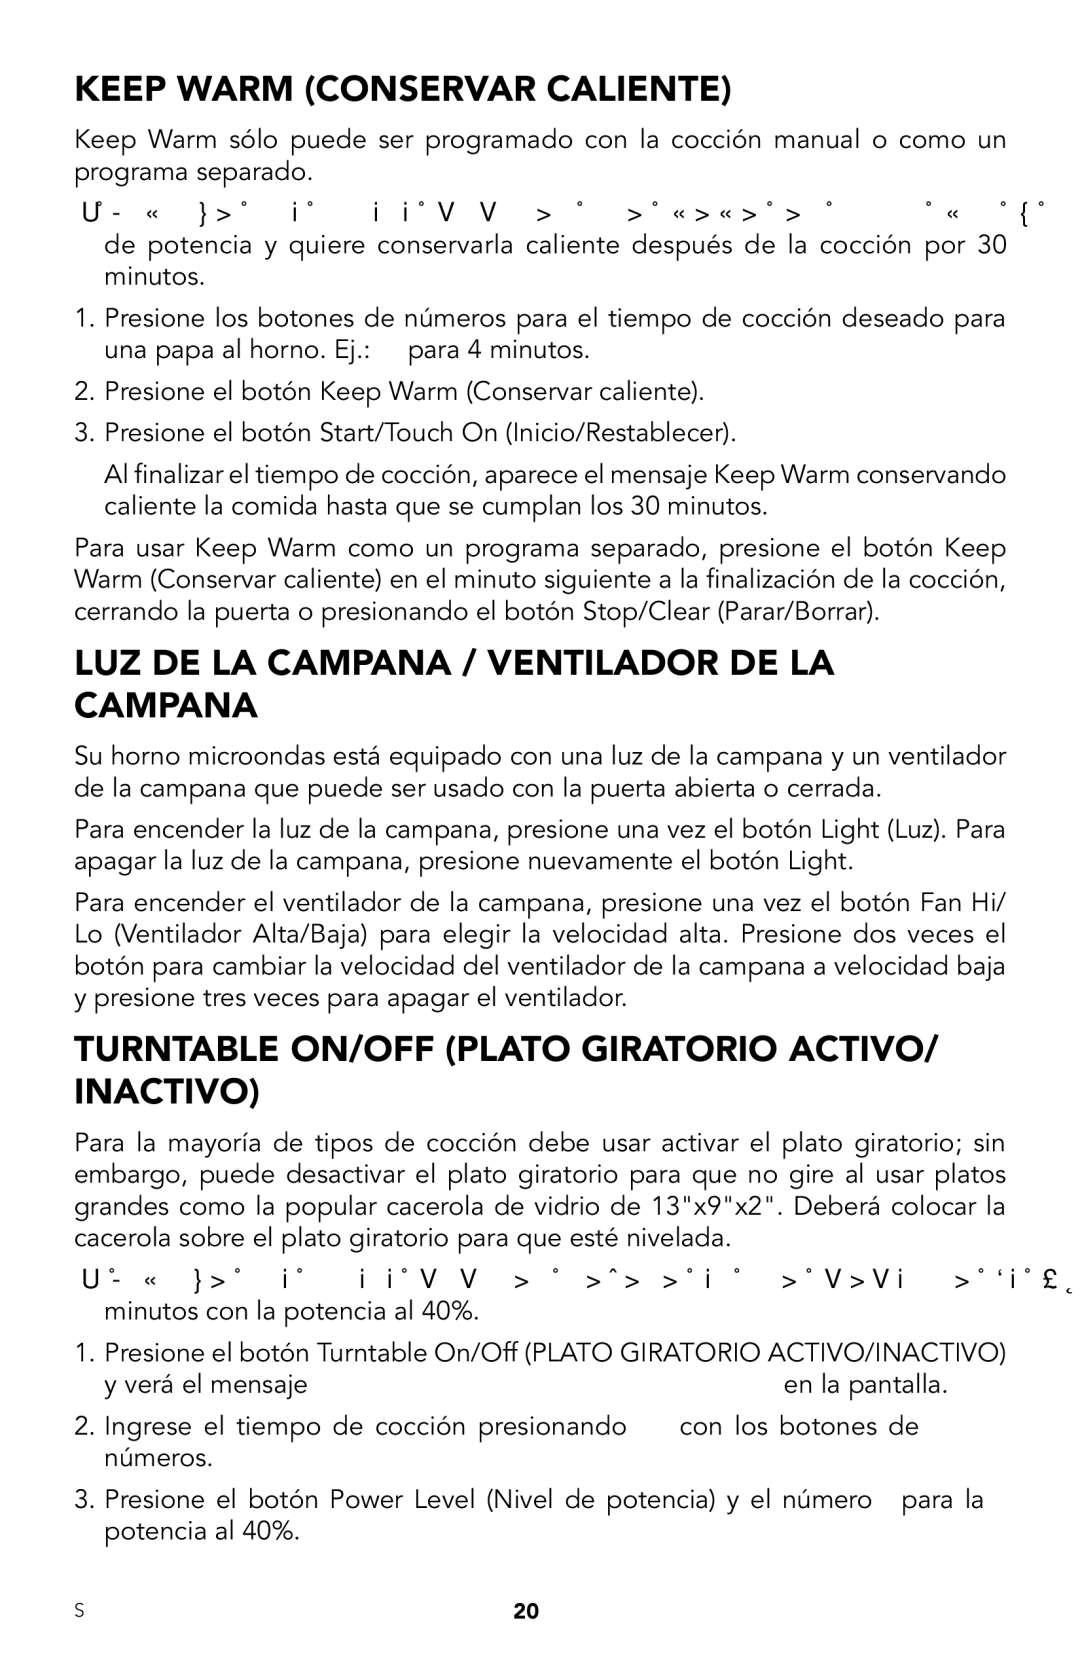 Viking RDMOR206SS manual Keep Warm Conservar Caliente, LUZ DE LA Campana / Ventilador DE LA Campana 